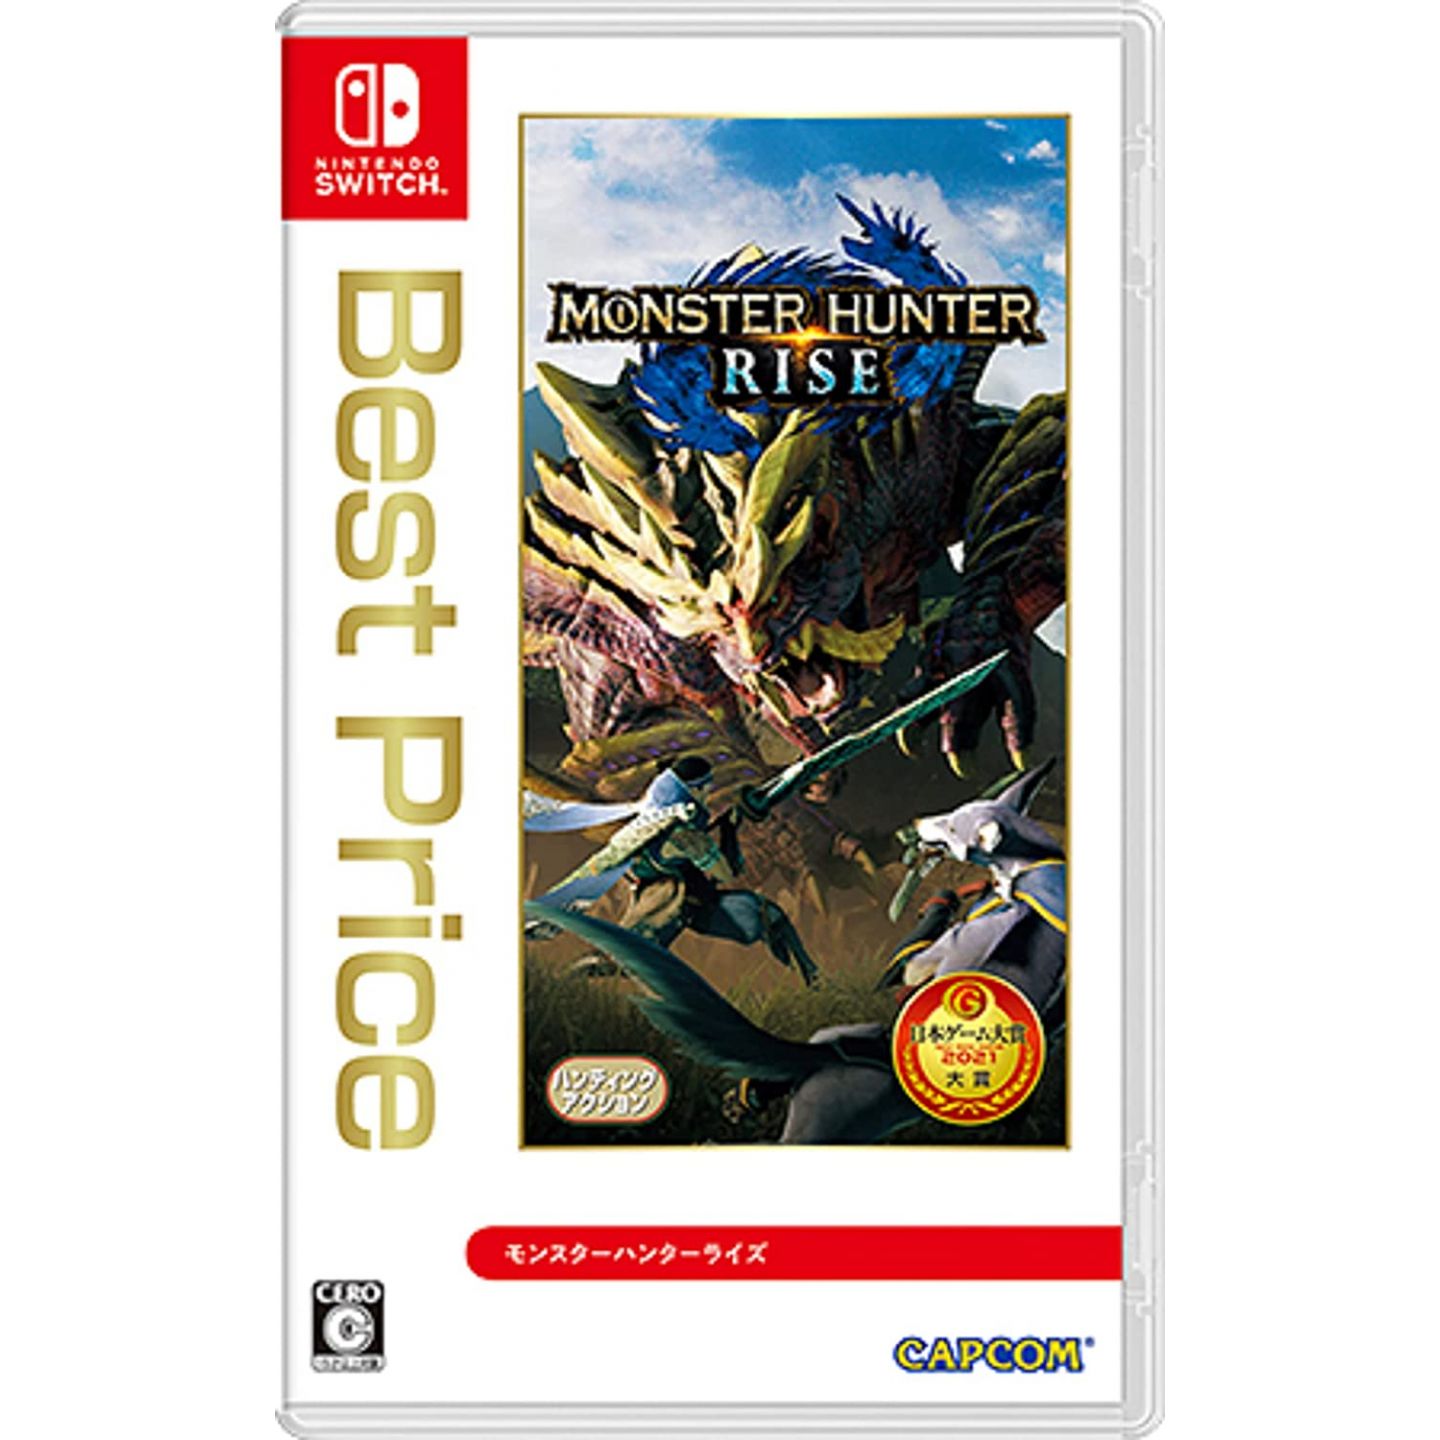 CAPCOM - Monster Nintendo Switch for (Best Rise Price) Hunter